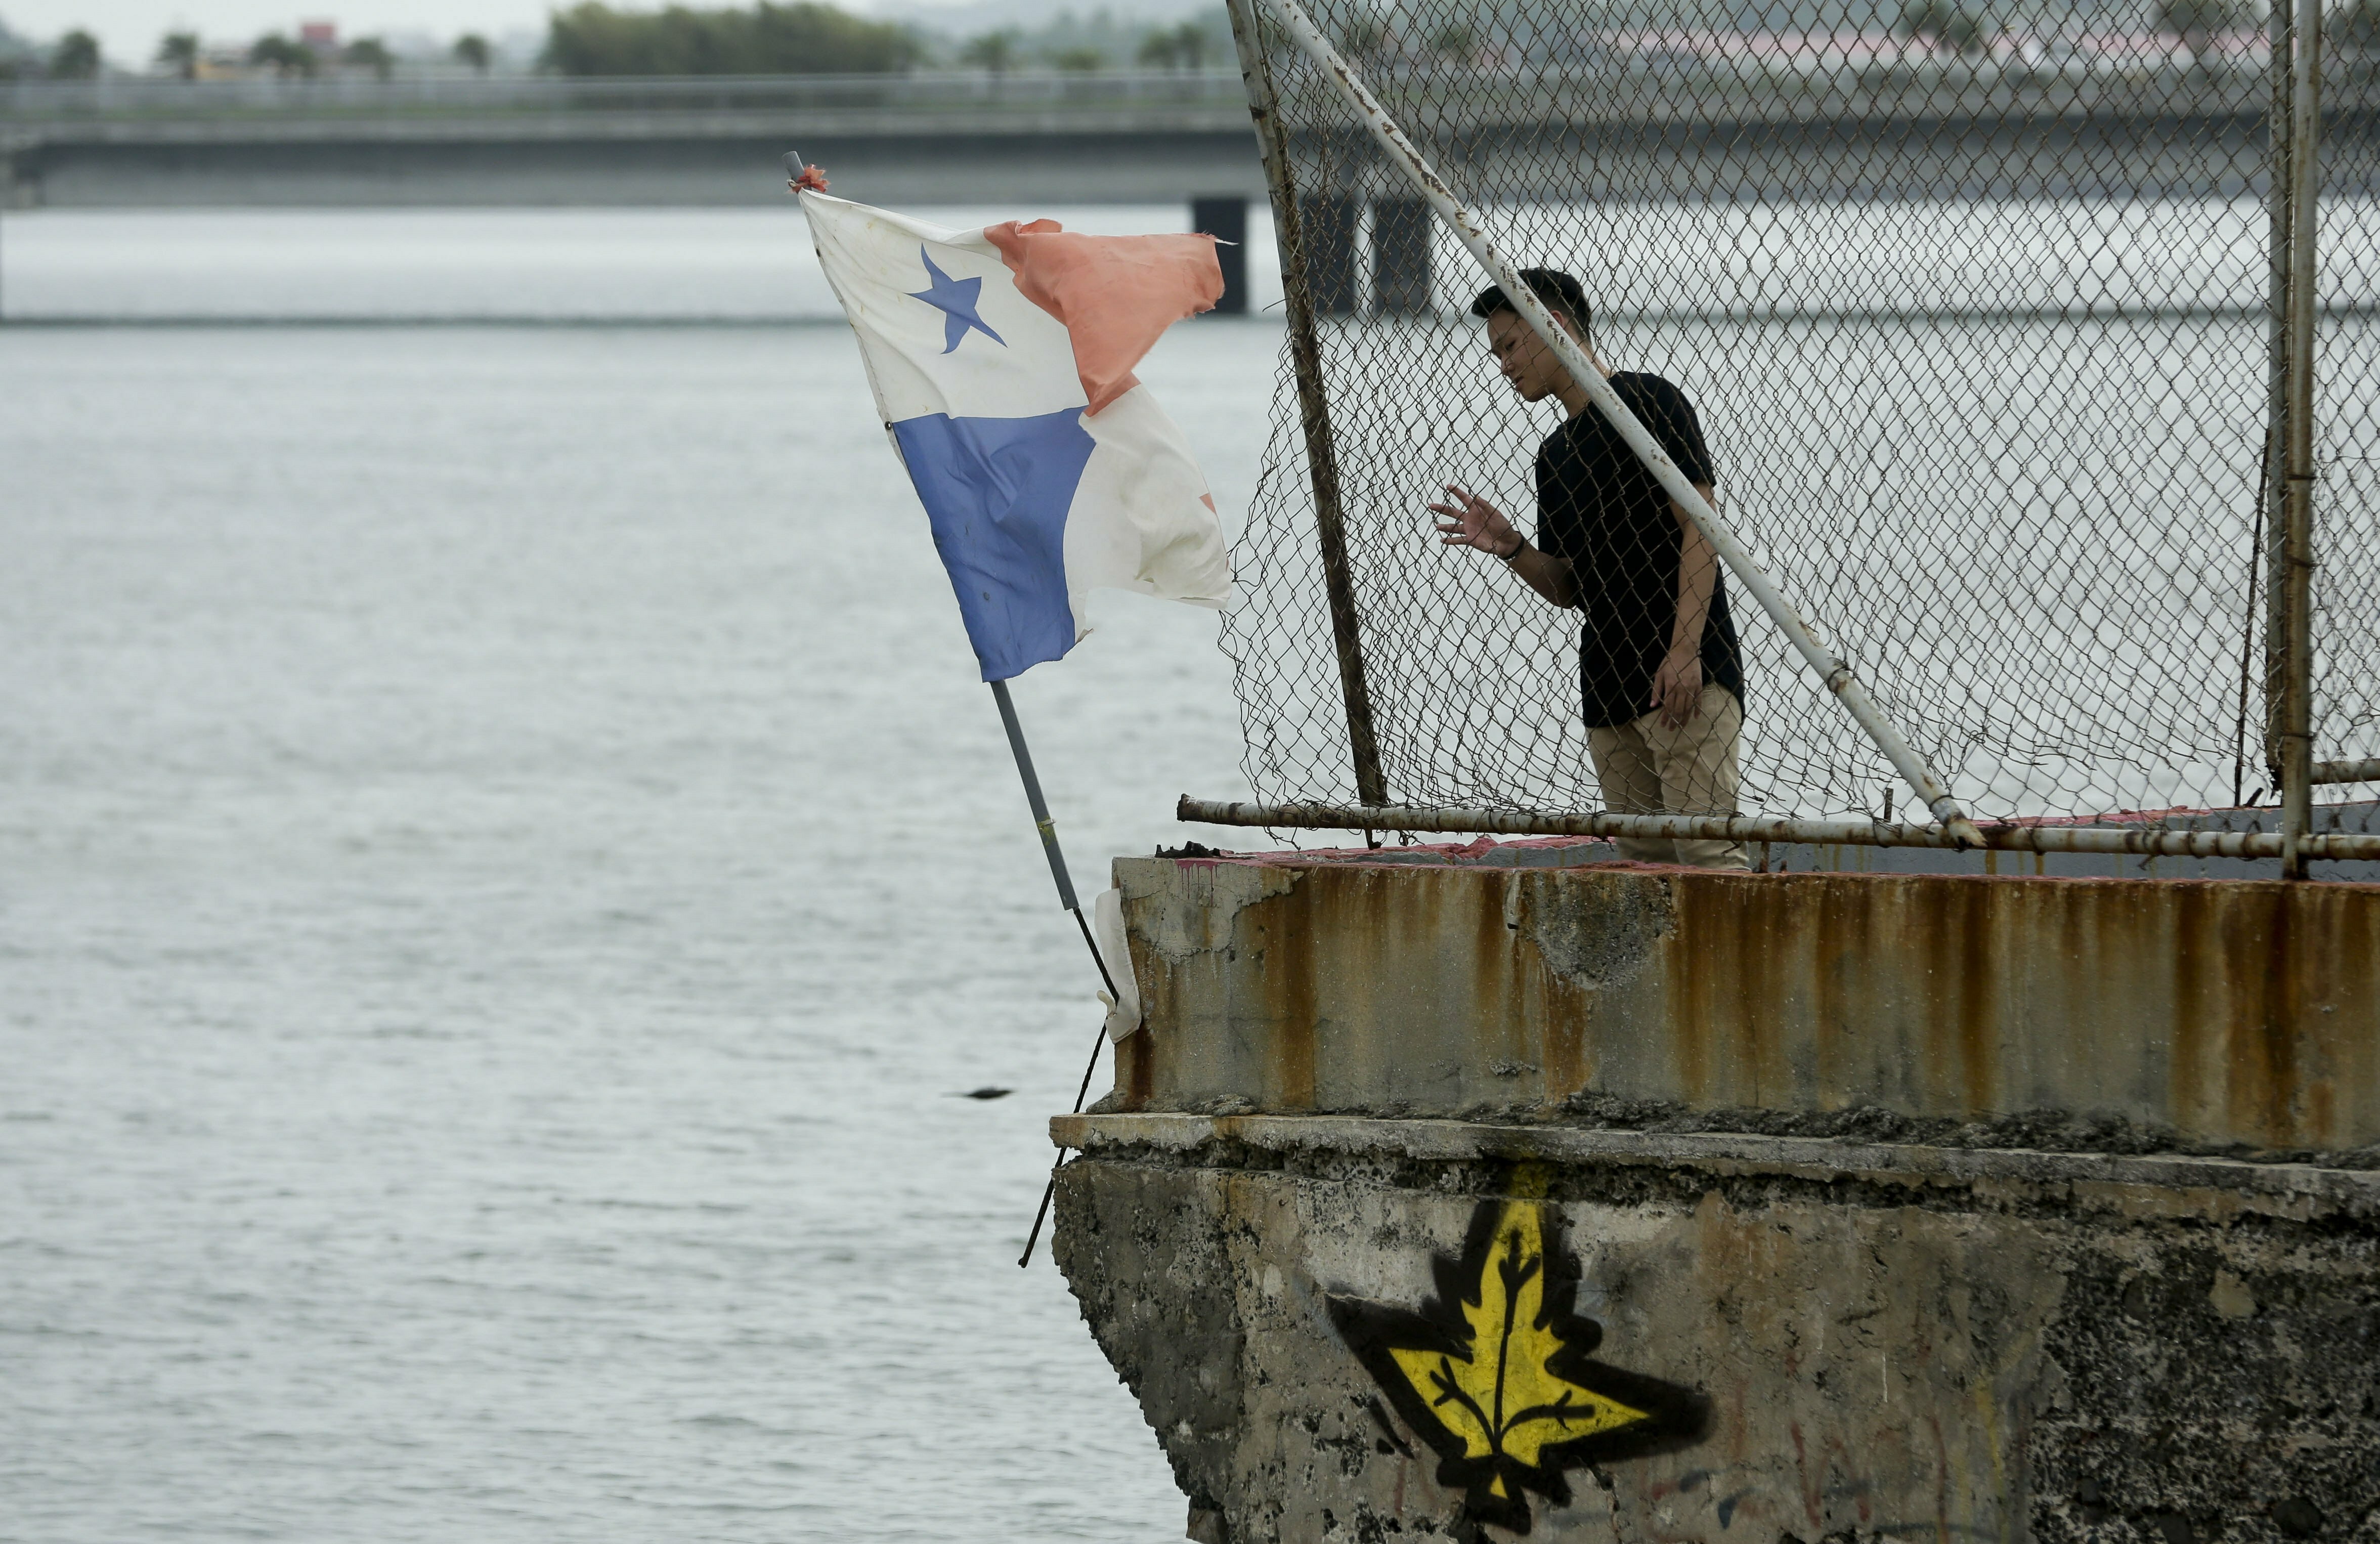 Право флага судна. Панамский флаг на судне. Флаг панамы на судне. Корабль с панамским флагом. Политика панамы.